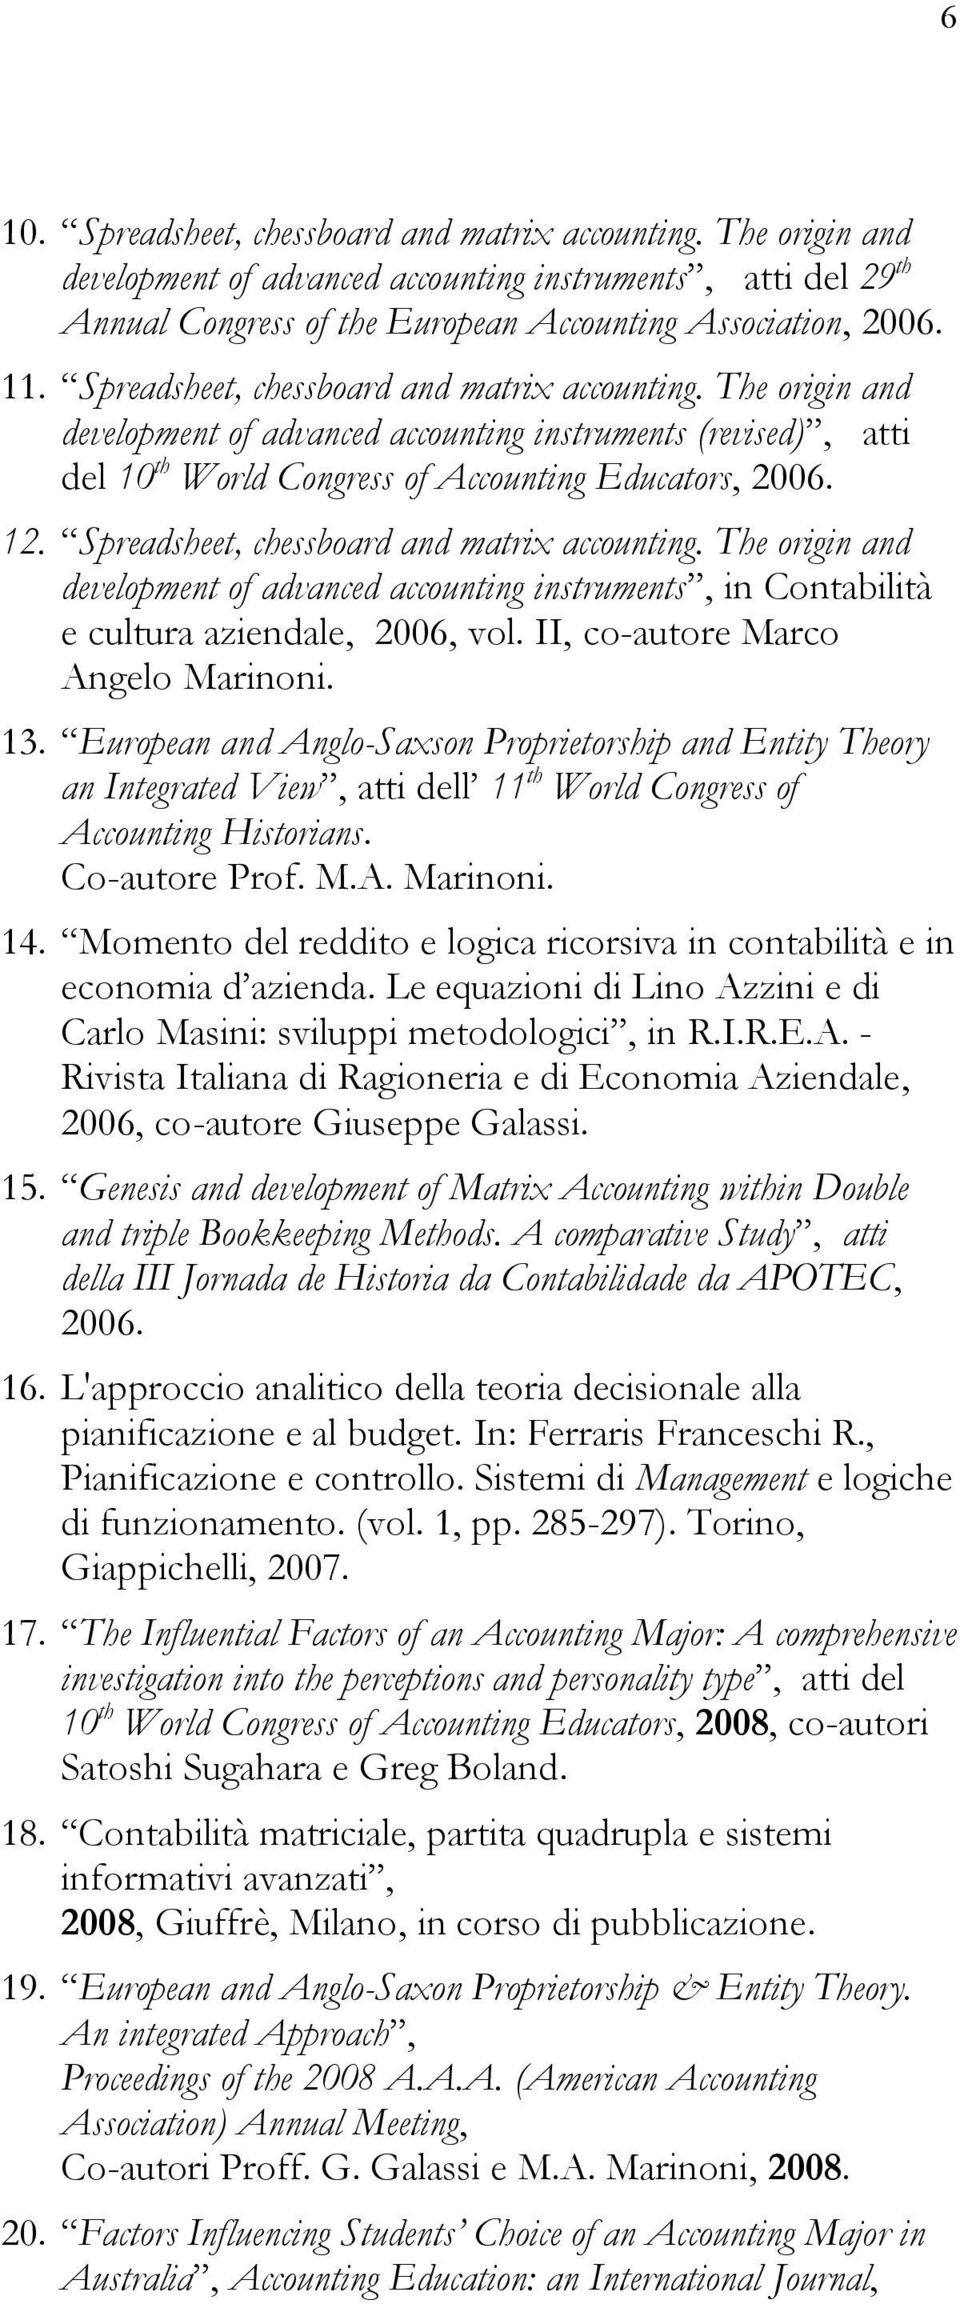 Spreadsheet, chessboard and matrix accounting. The origin and development of advanced accounting instruments, in Contabilità e cultura aziendale, 2006, vol. II, co-autore Marco Angelo Marinoni. 13.